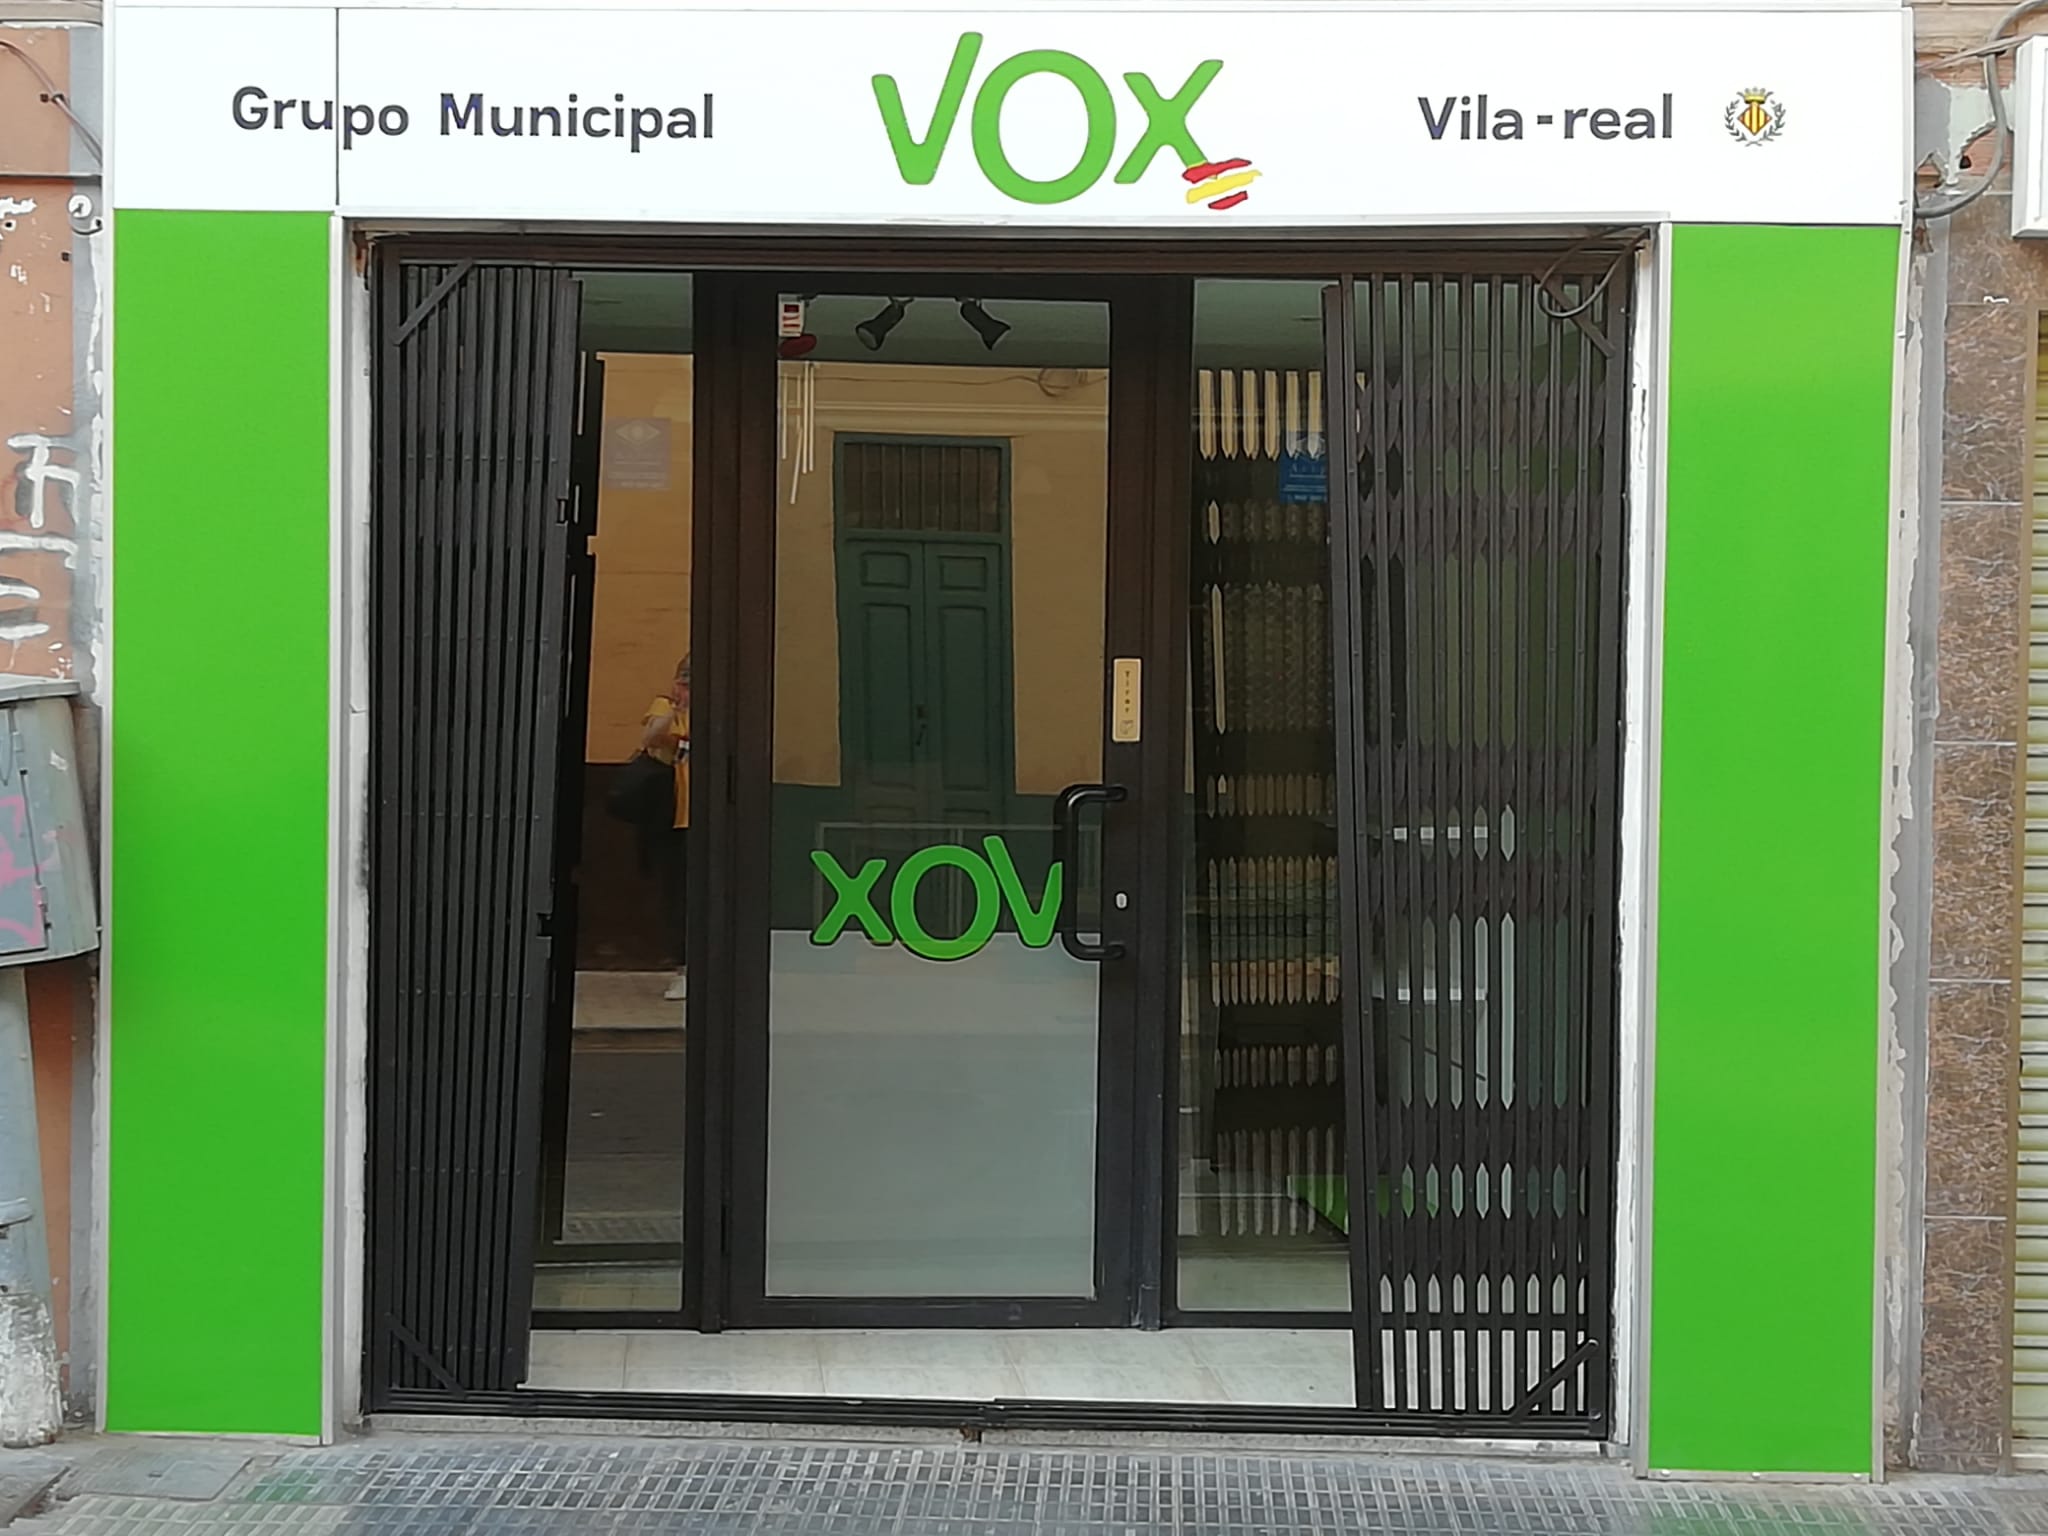 Entrevista a Irene Herrero, concejala de VOX en el Ayuntamiento de Vila-real